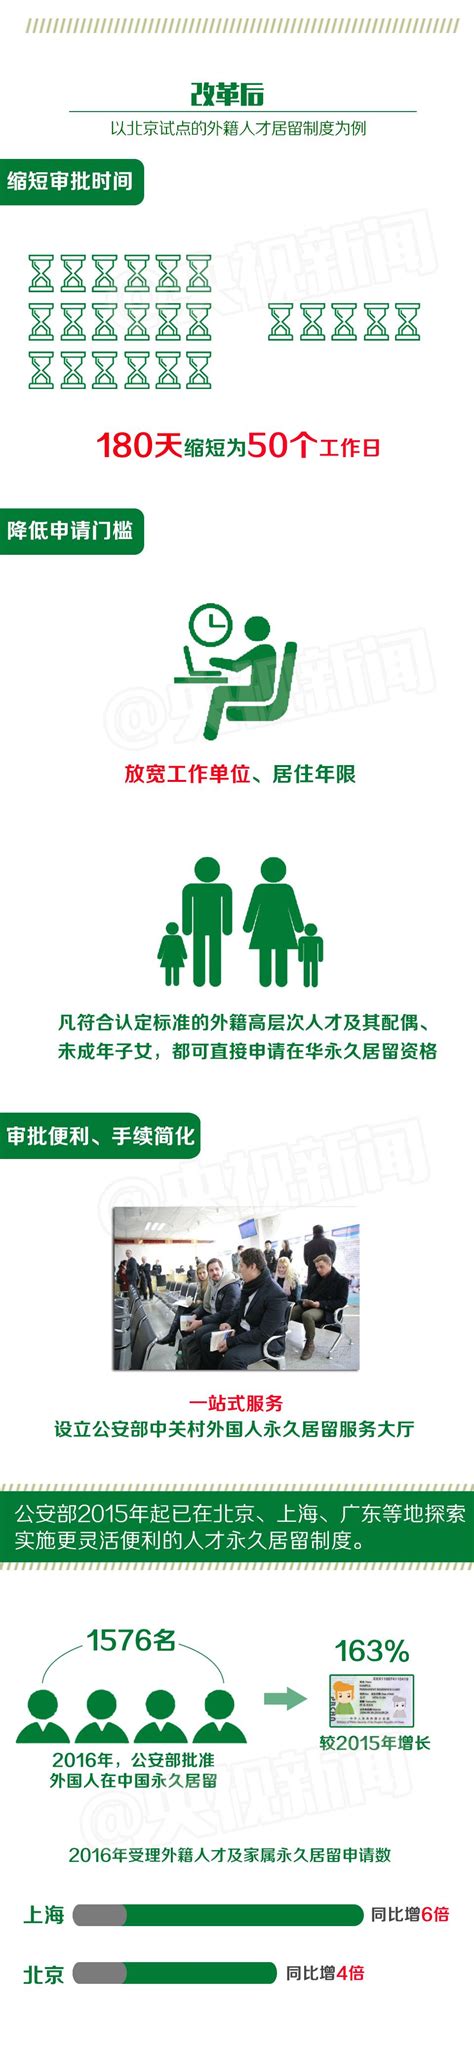 9月15日后胡志明市将逐步开放的计划和凭“绿卡”外出活动的路线图 - 知乎